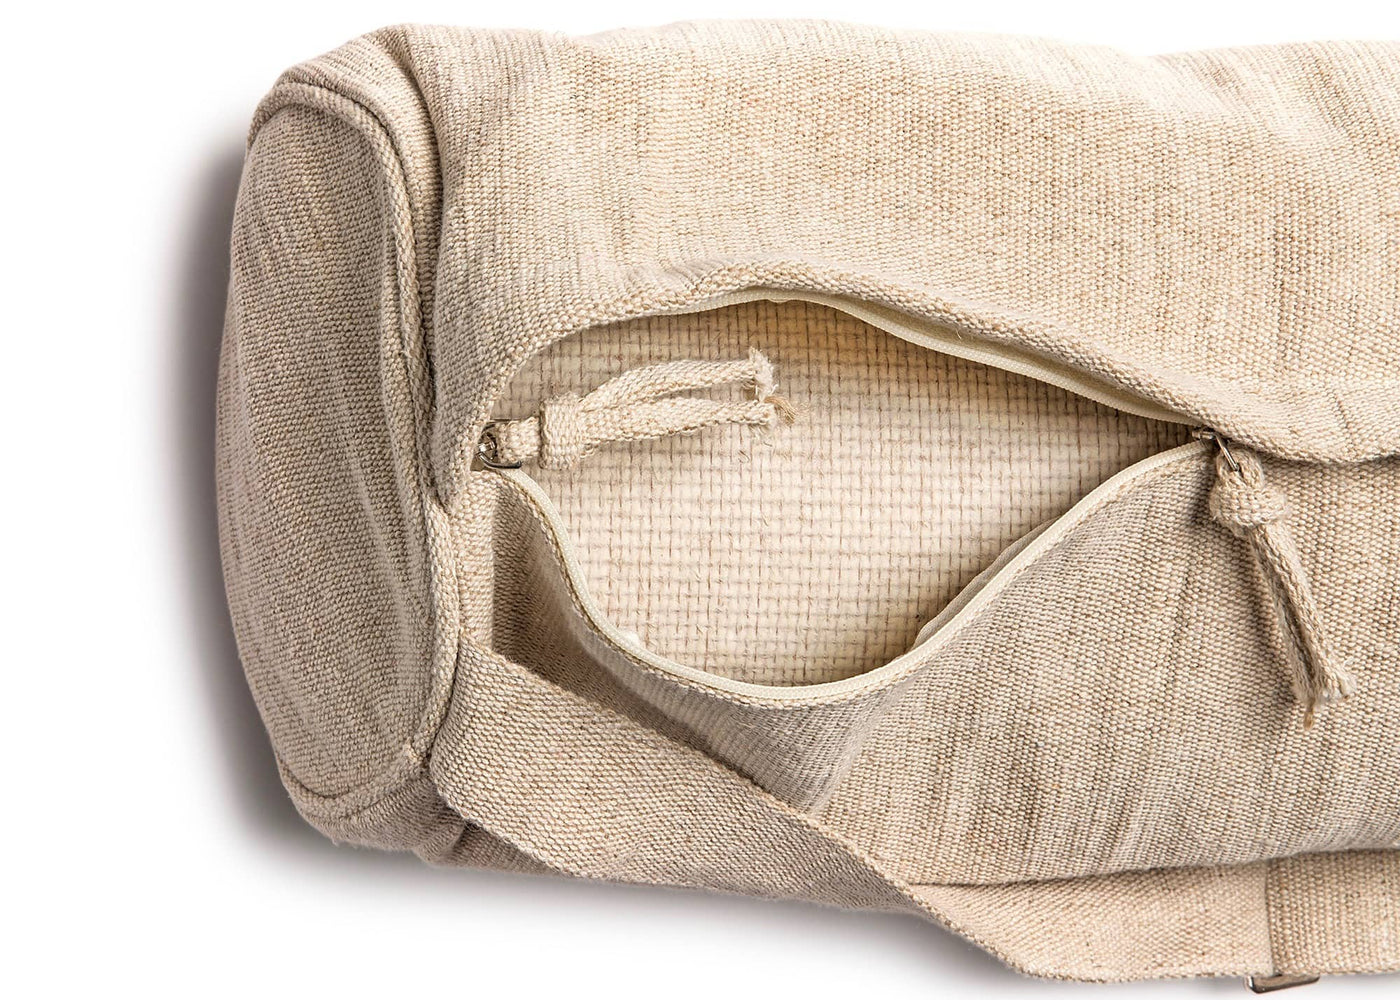 Buy Yoga Mat Bags online